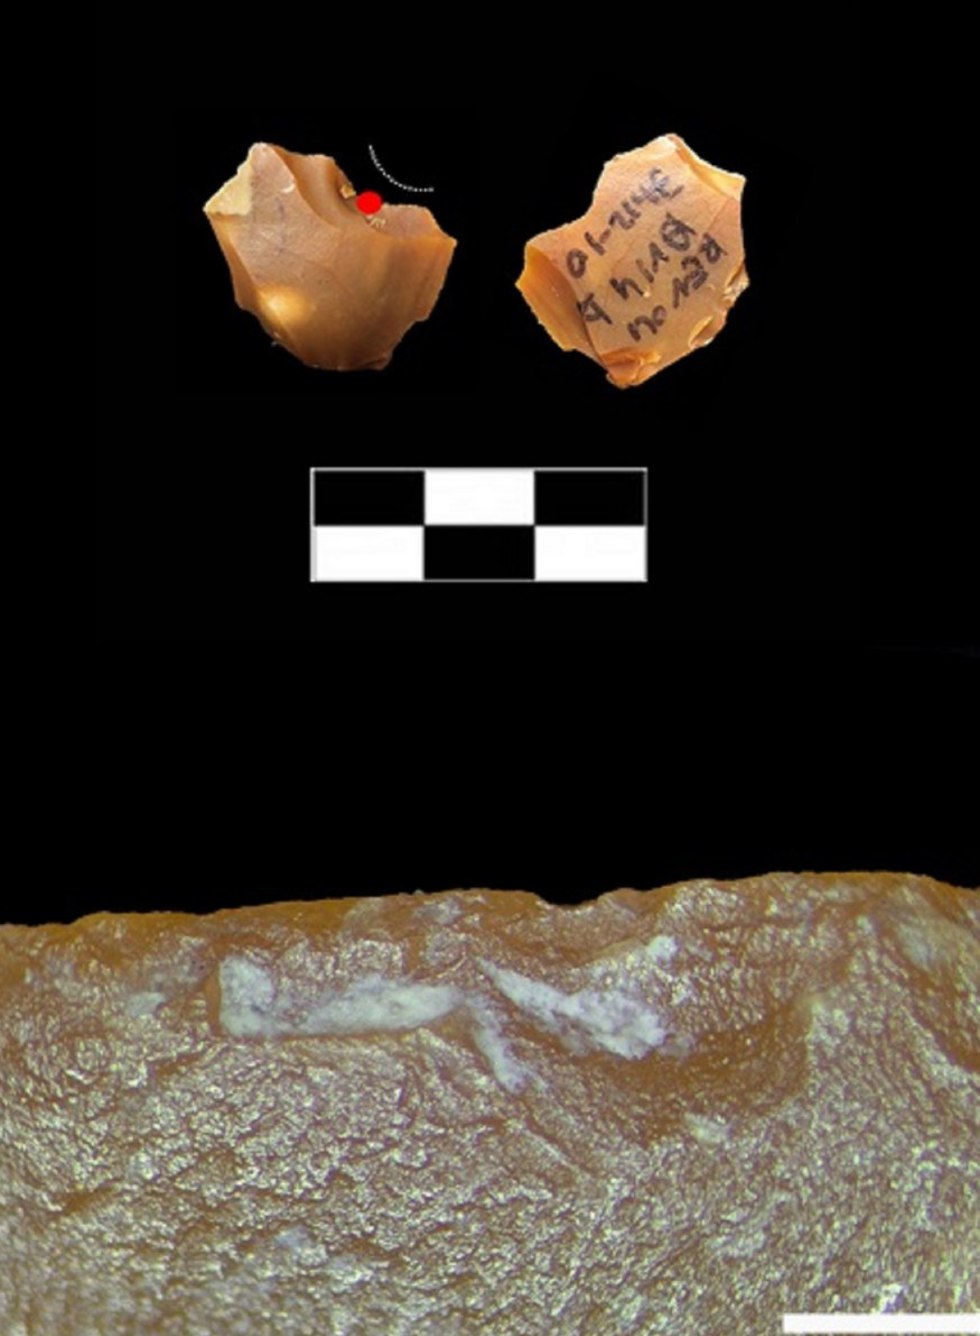  נתז קטנטן מהאתר של רבדים: סימני שימוש (מסומנים בקווים) ושרידי עצם (מסומנים בנקודה לבנה ובהגדלה בתמונה התחתונה) (צילום: ד